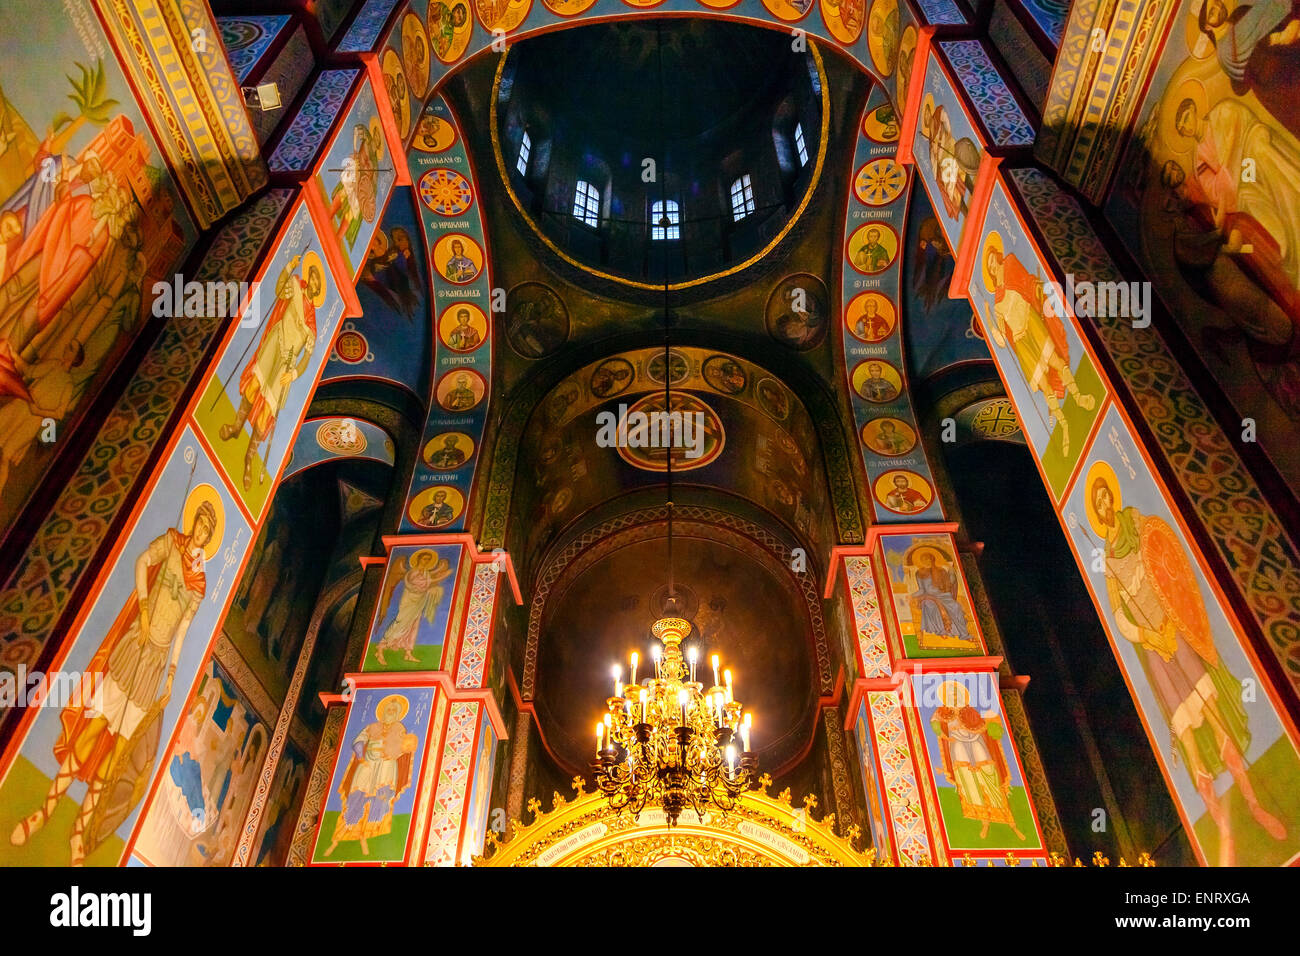 Mosaïques antiques Icônes de l'écran d'Or Dome Basilique Saint Michel Cathédrale Monastère Kiev Ukraine. Banque D'Images